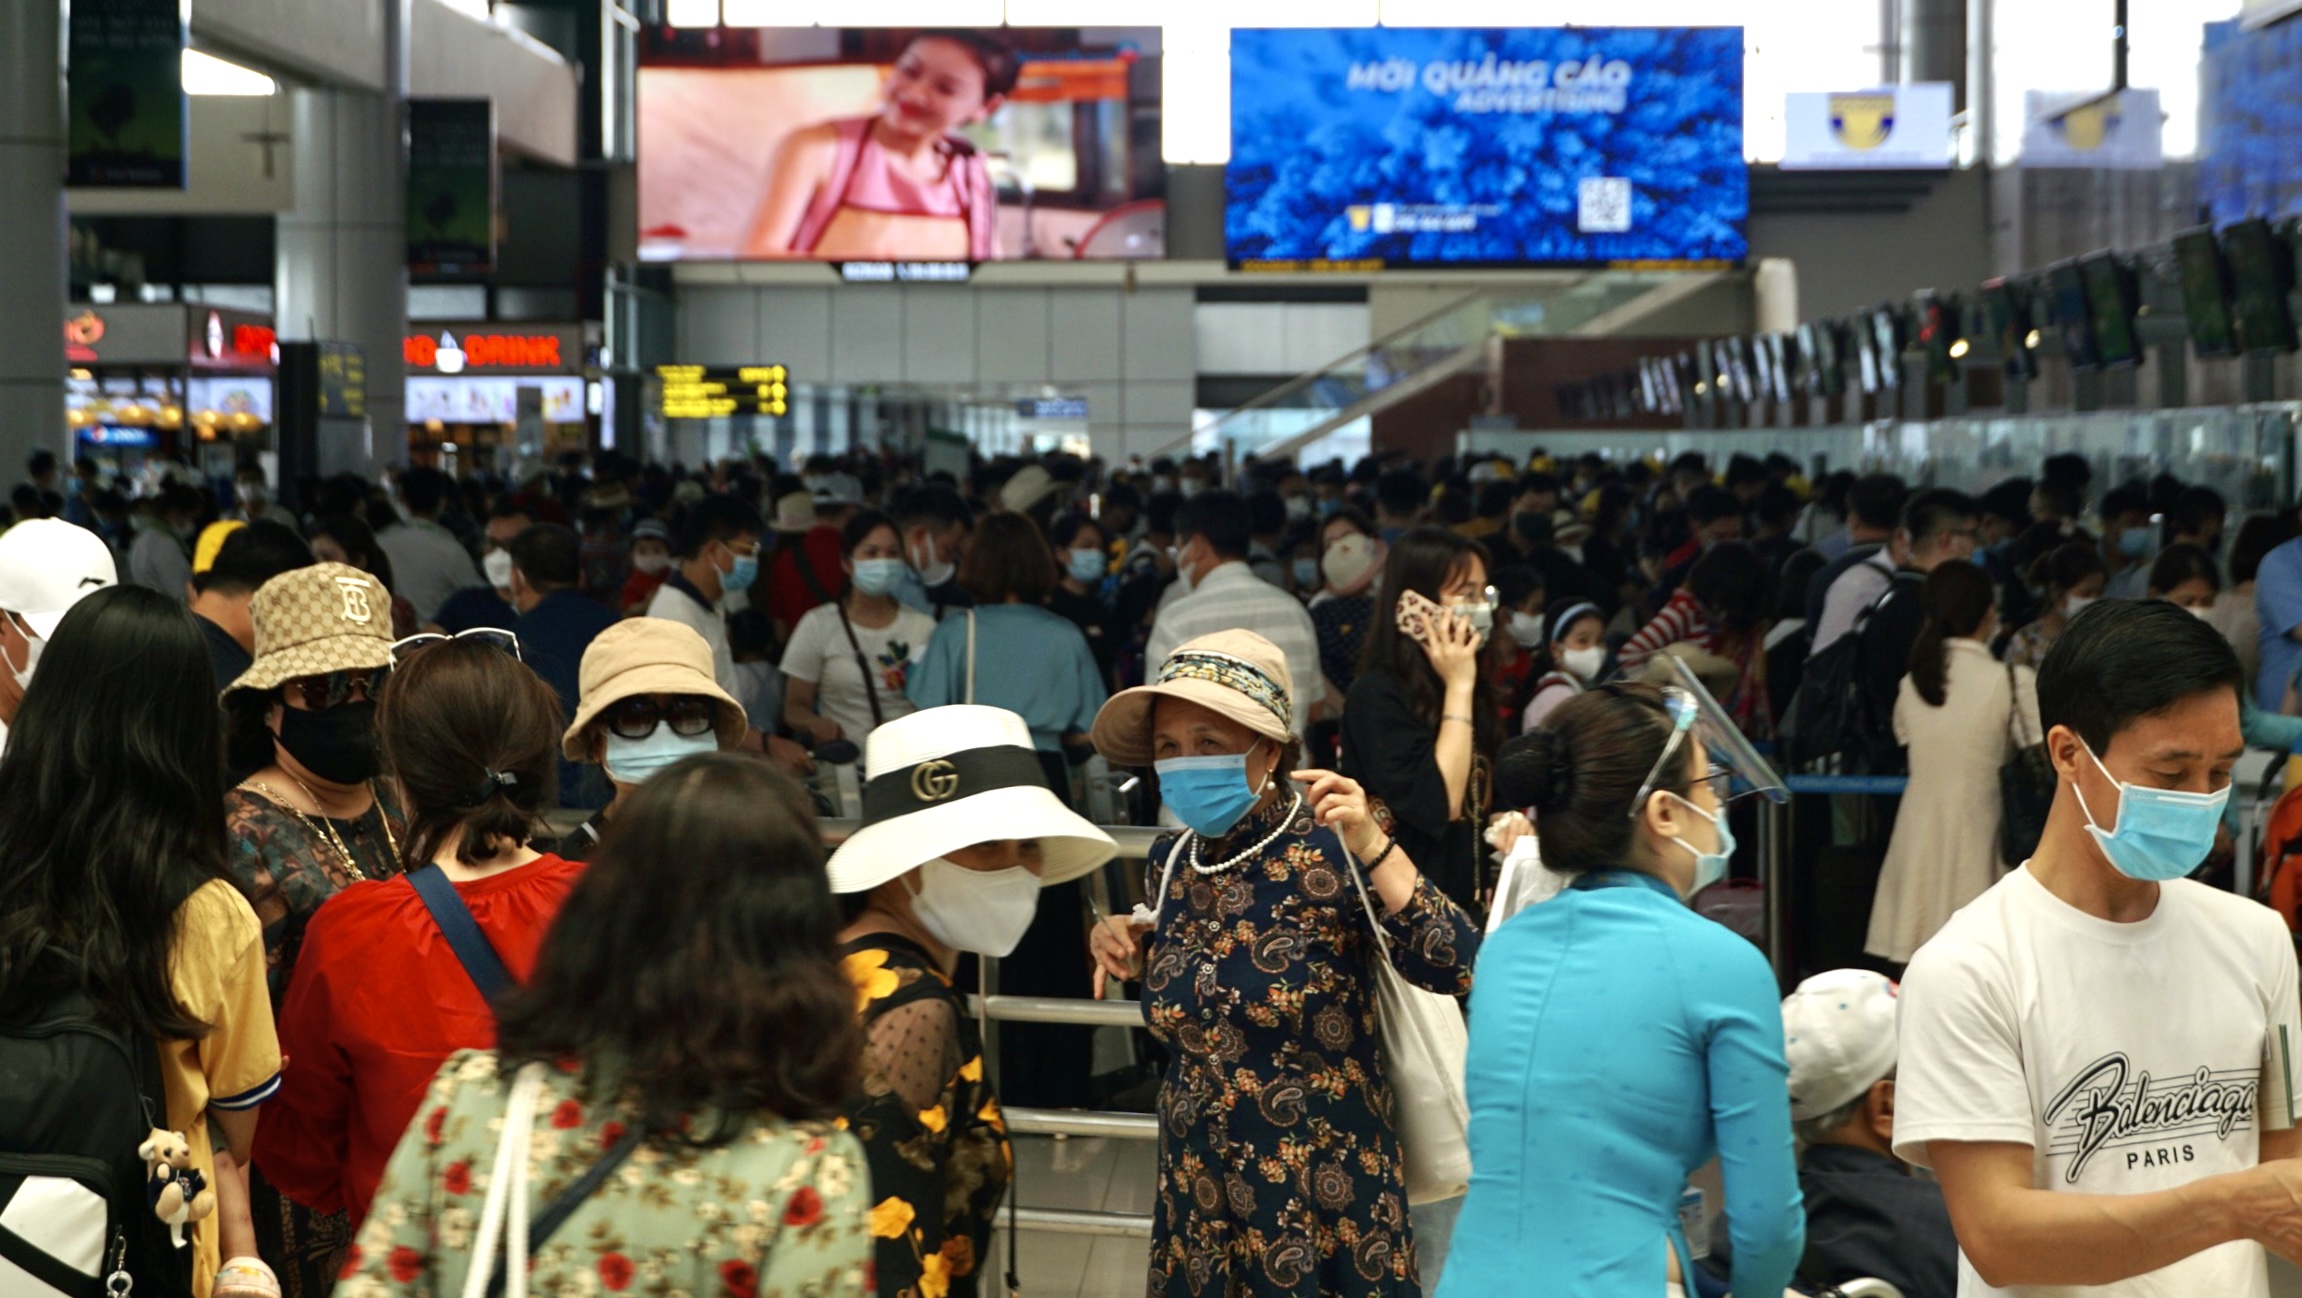 Chùm ảnh: Sân bay Nội bài đông nghẹt trước lễ 30-4, 1-5 - Ảnh 12.